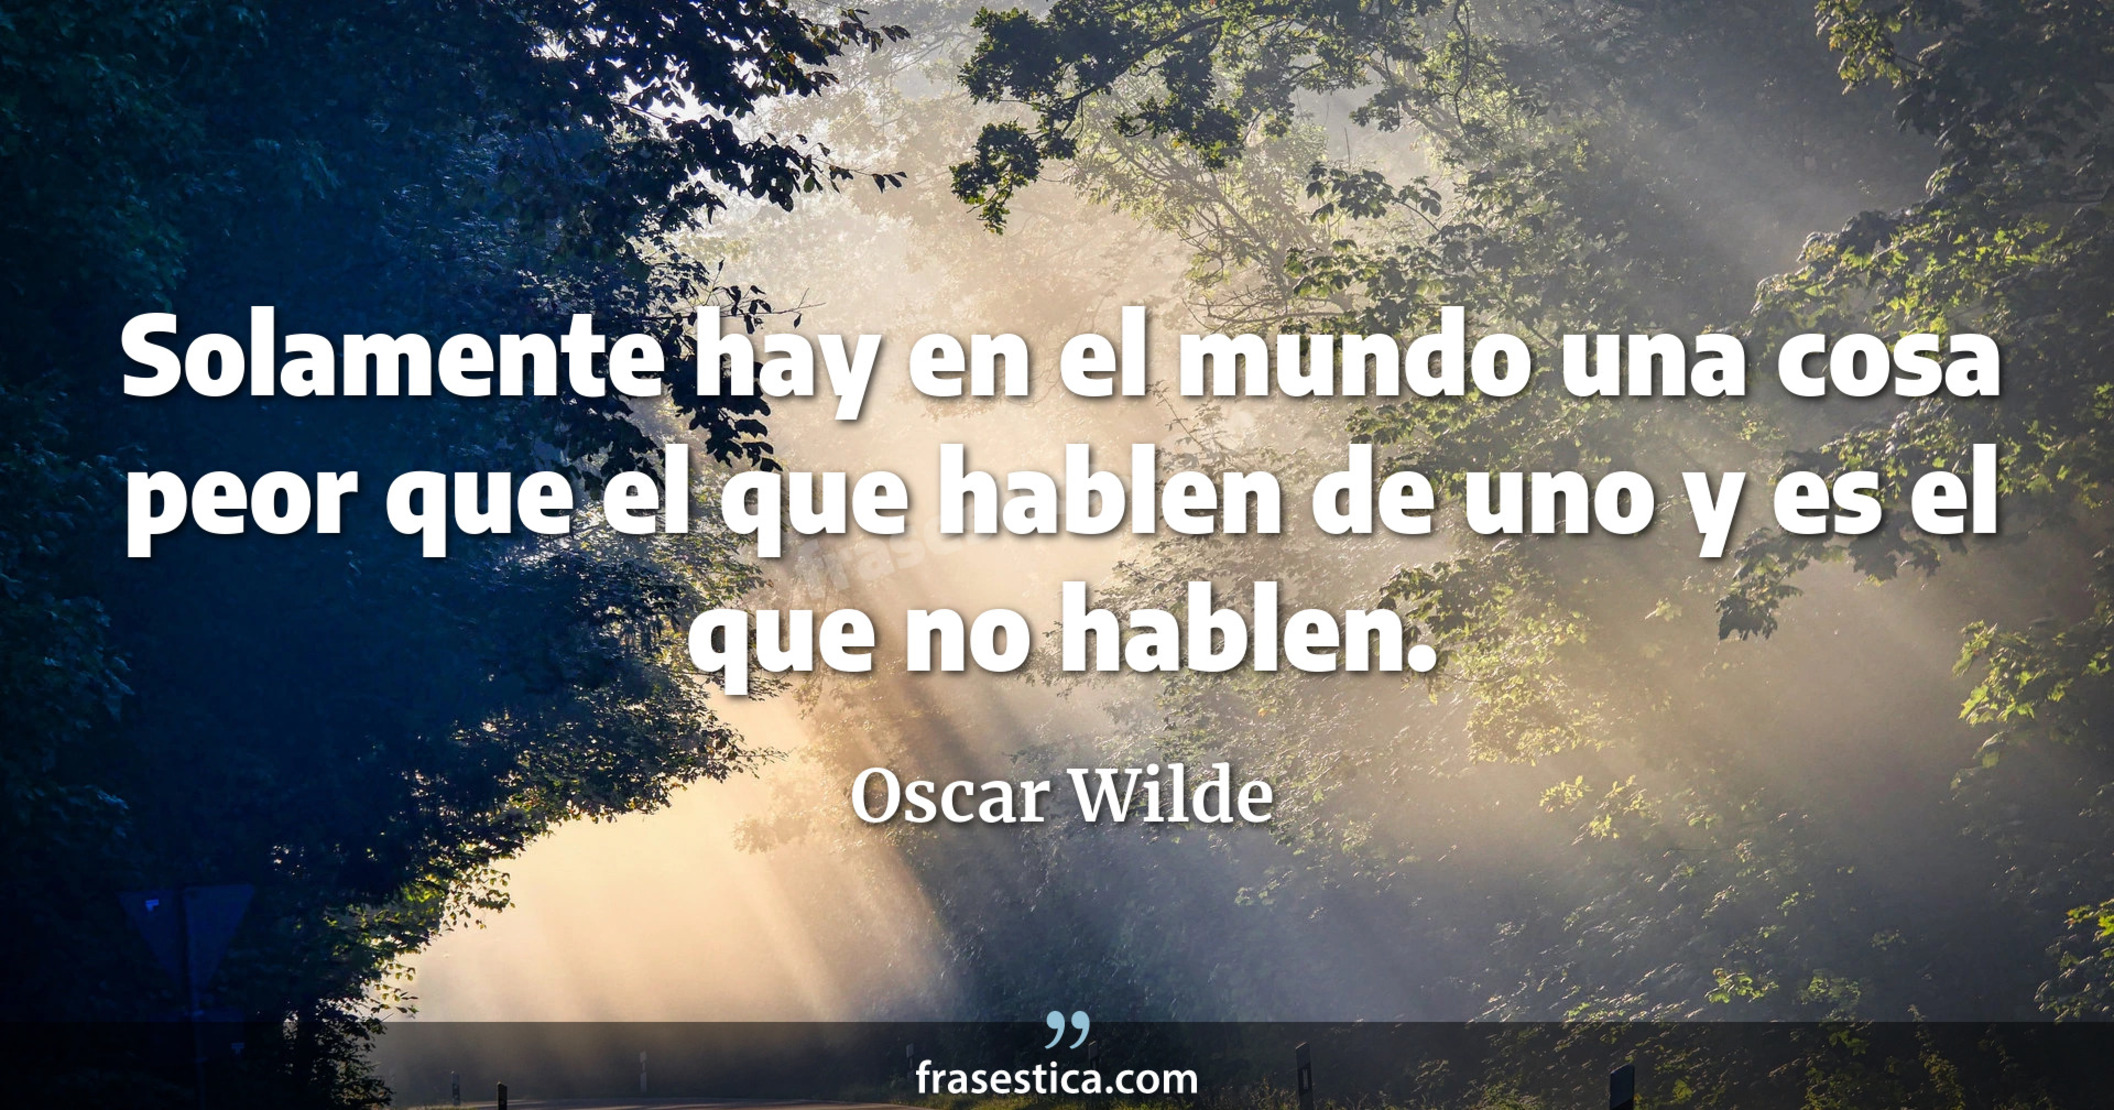 Solamente hay en el mundo una cosa peor que el que hablen de uno y es el que no hablen. - Oscar Wilde